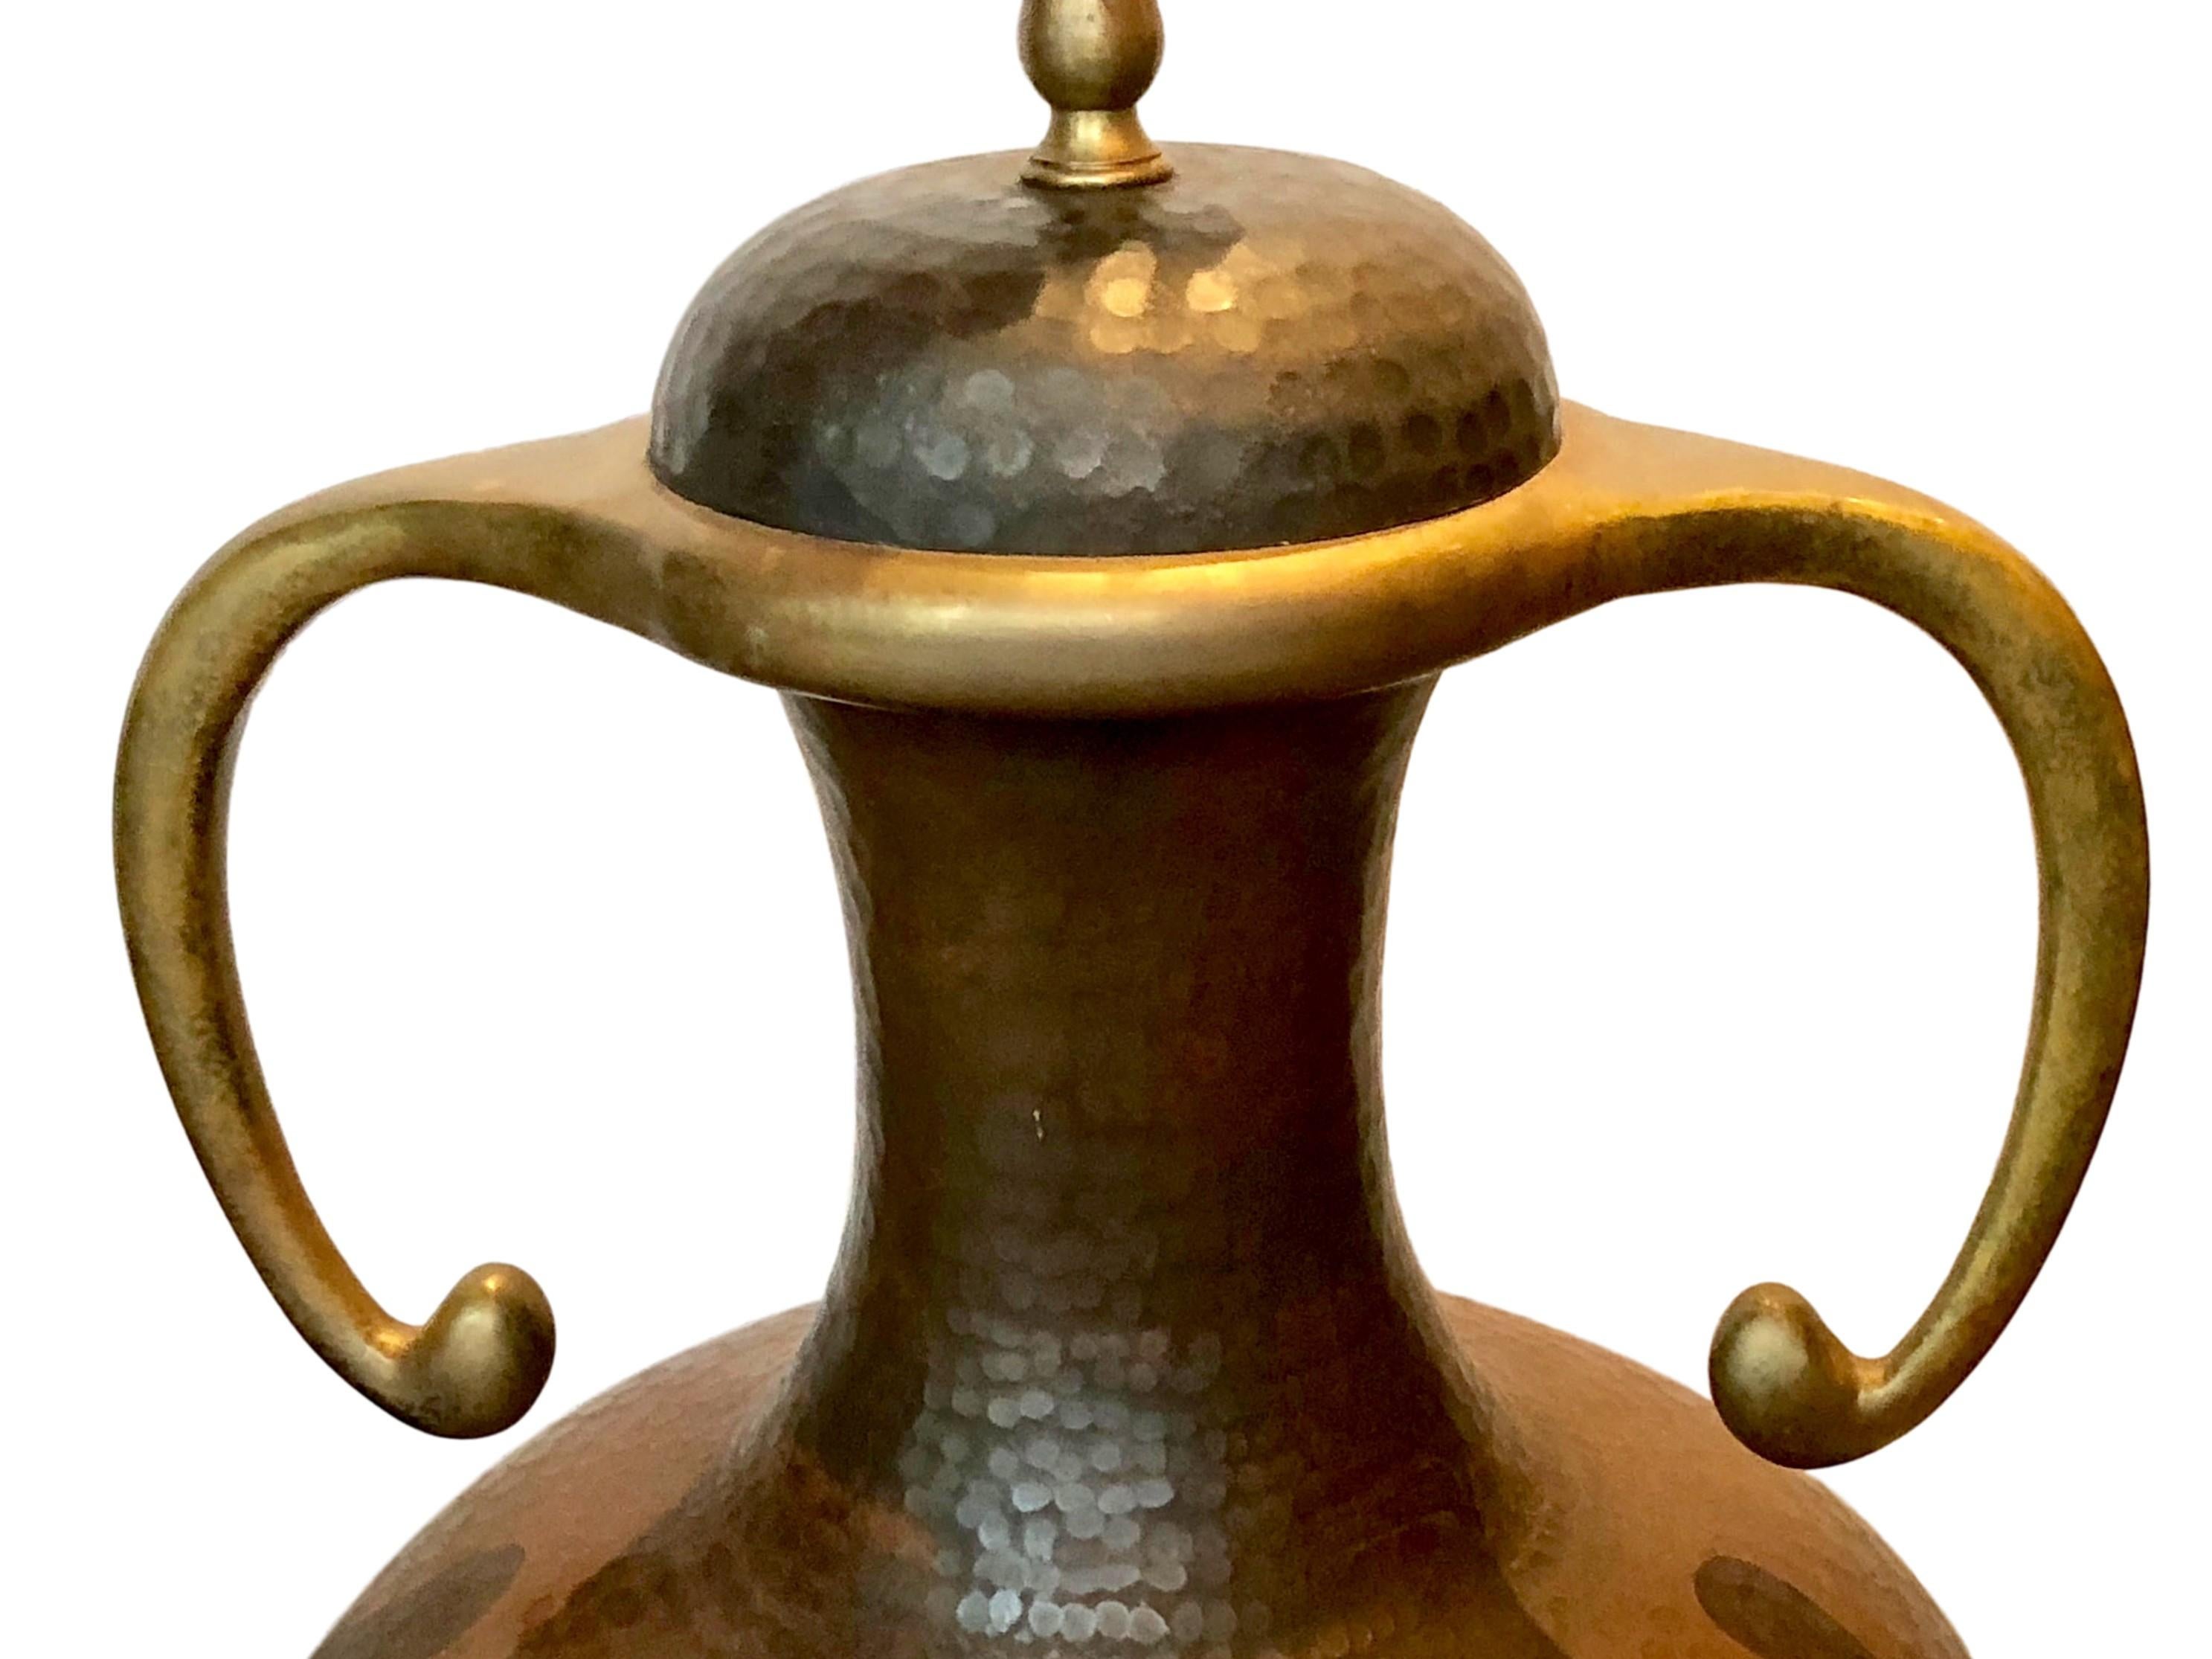 Zwei große amerikanische Arts & Crafts-Tischlampen aus gehämmertem Kupfer mit Bronzegriffen und originaler Patina aus der Zeit um 1940.

Abmessungen:
Höhe des Körpers: 19,5